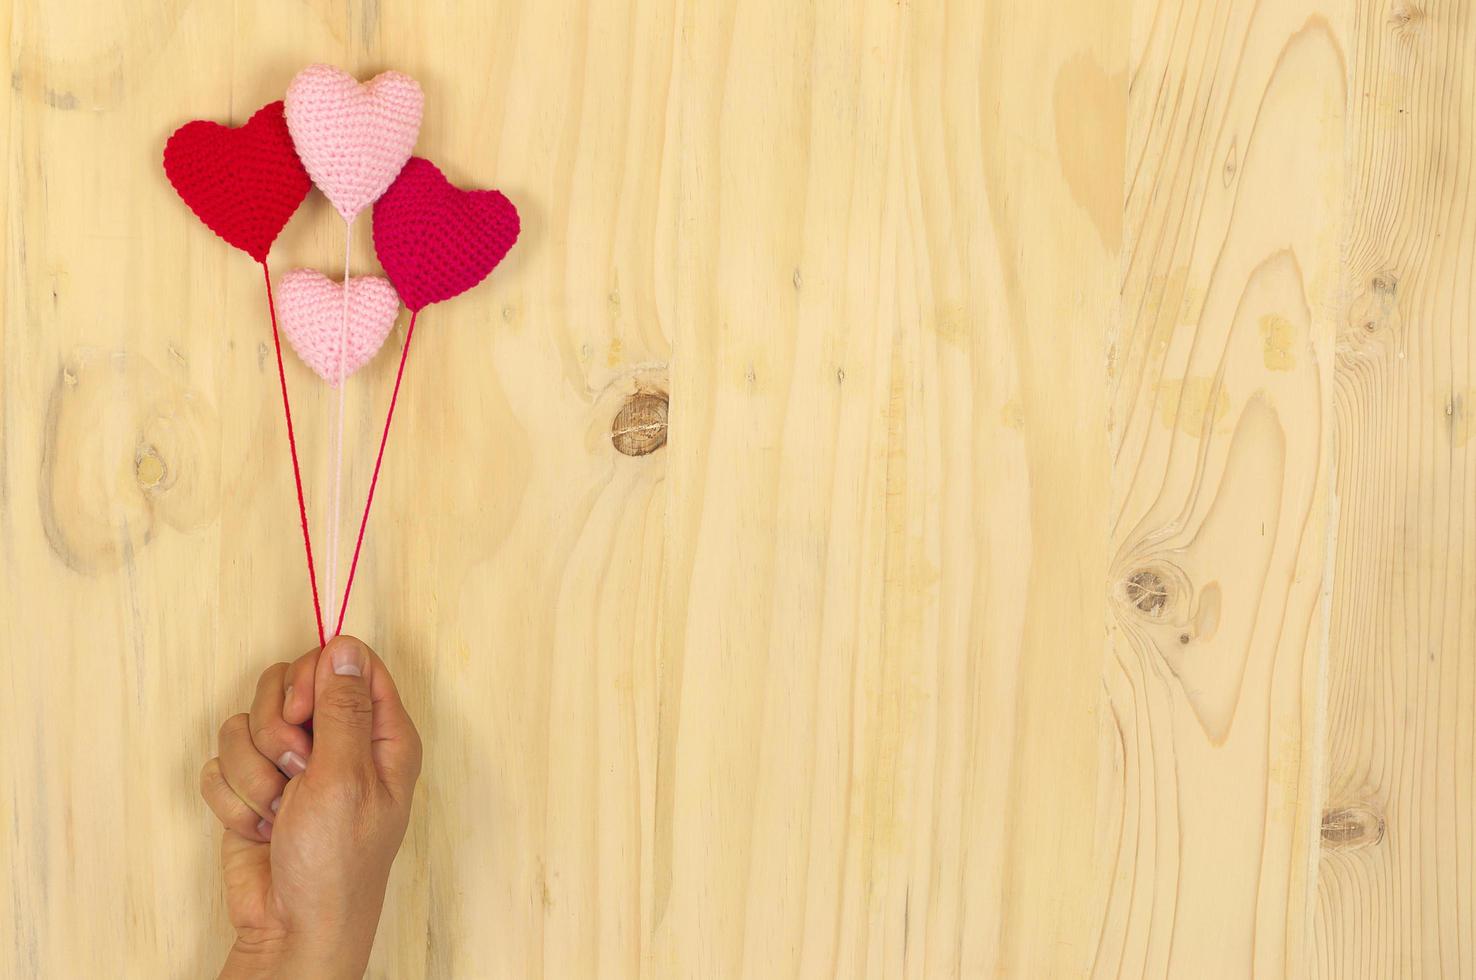 mano que sostiene el corazón flotante de ganchillo rojo y rosa sobre fondo de madera foto